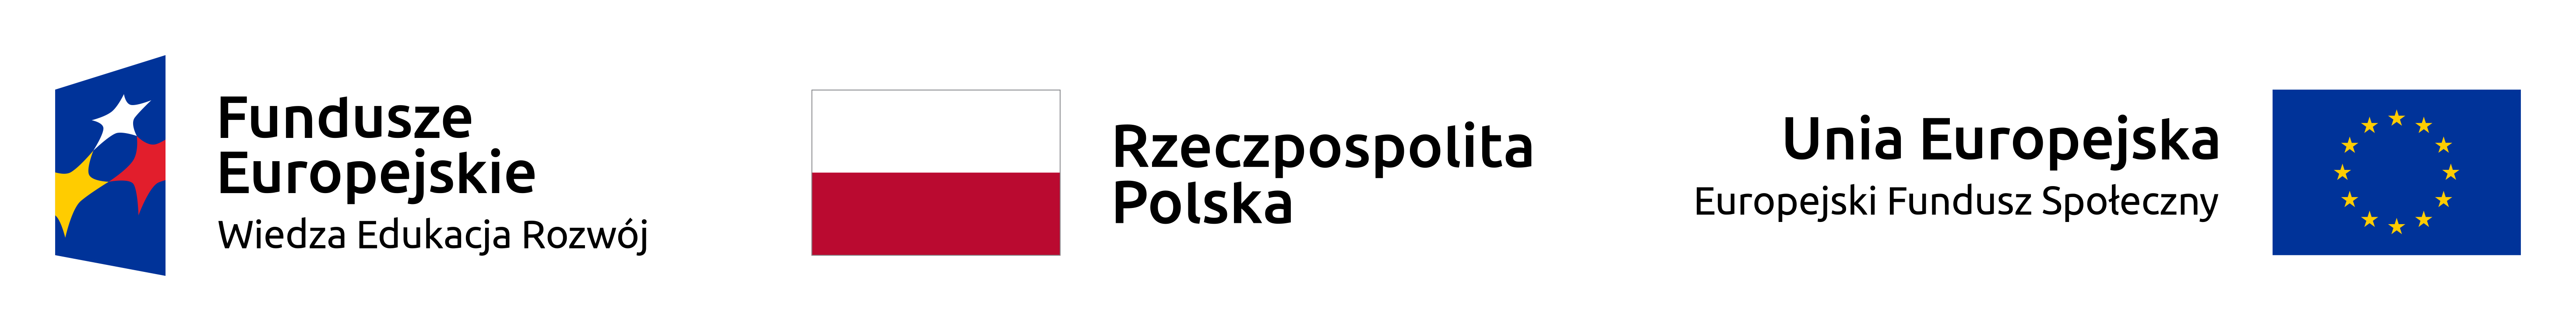 Logotypy - Fundusze Europejskie Wiedza Edukacja Rozwój, Rzeczpospolita Polska, Unia Europejska Europejski Fundusz Społeczny 